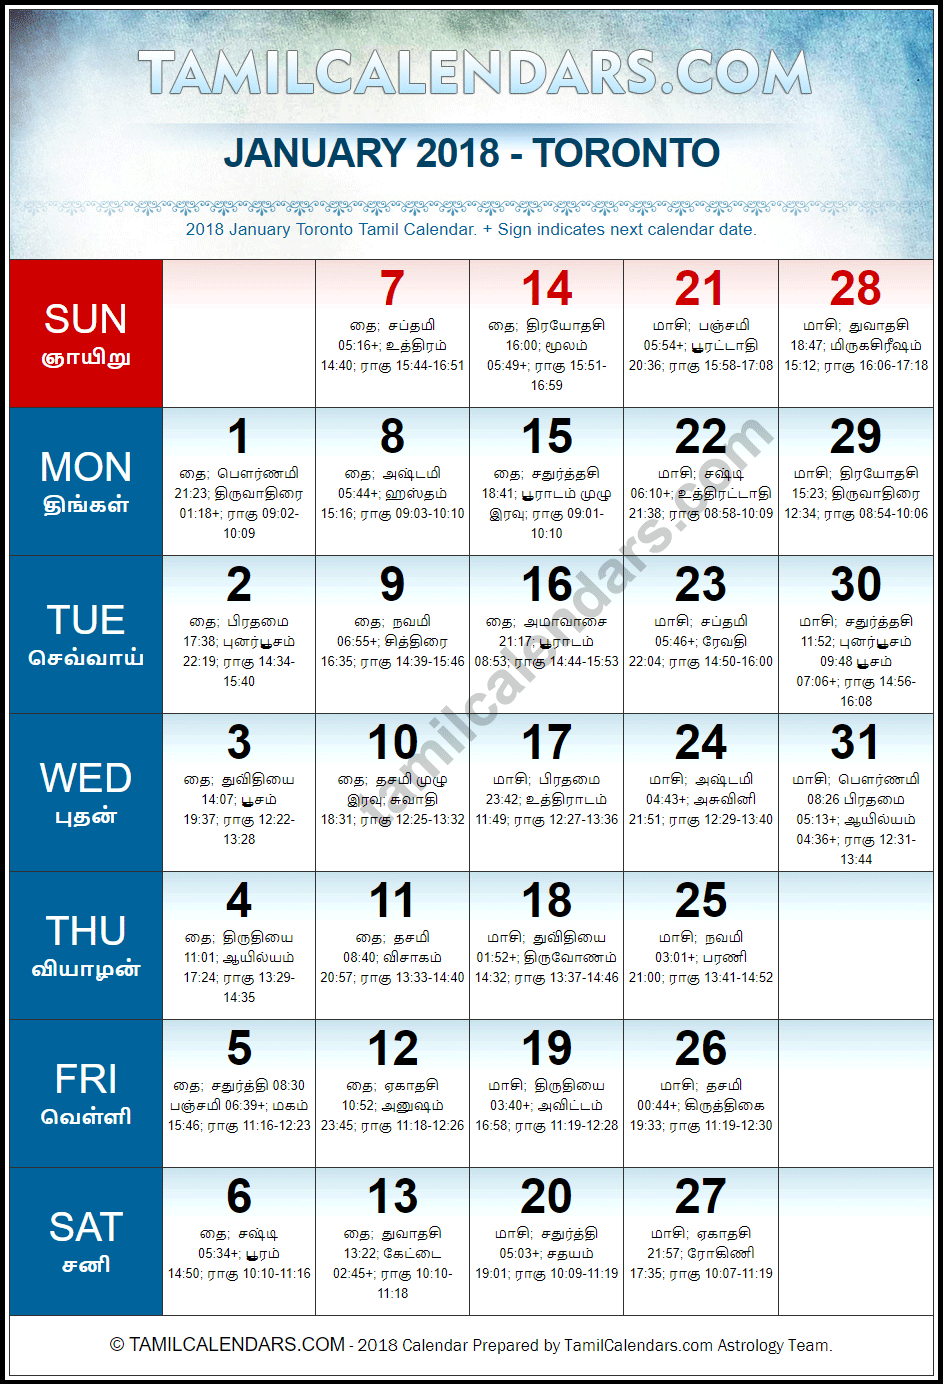 January 2018 Tamil Calendar for Toronto, Canada